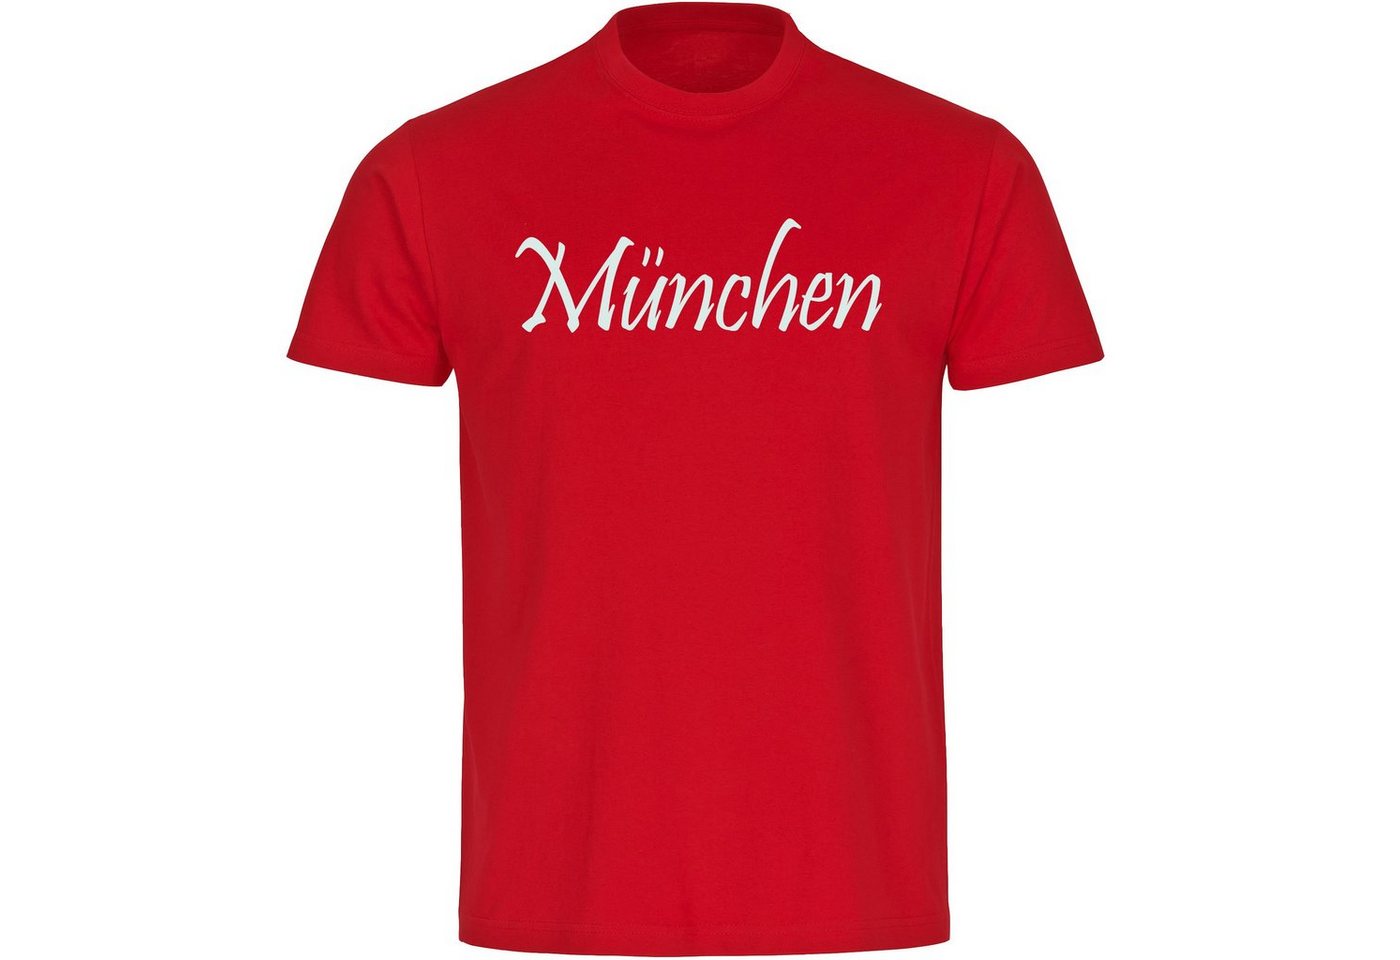 multifanshop T-Shirt Kinder München rot - Schriftzug - Boy Girl von multifanshop